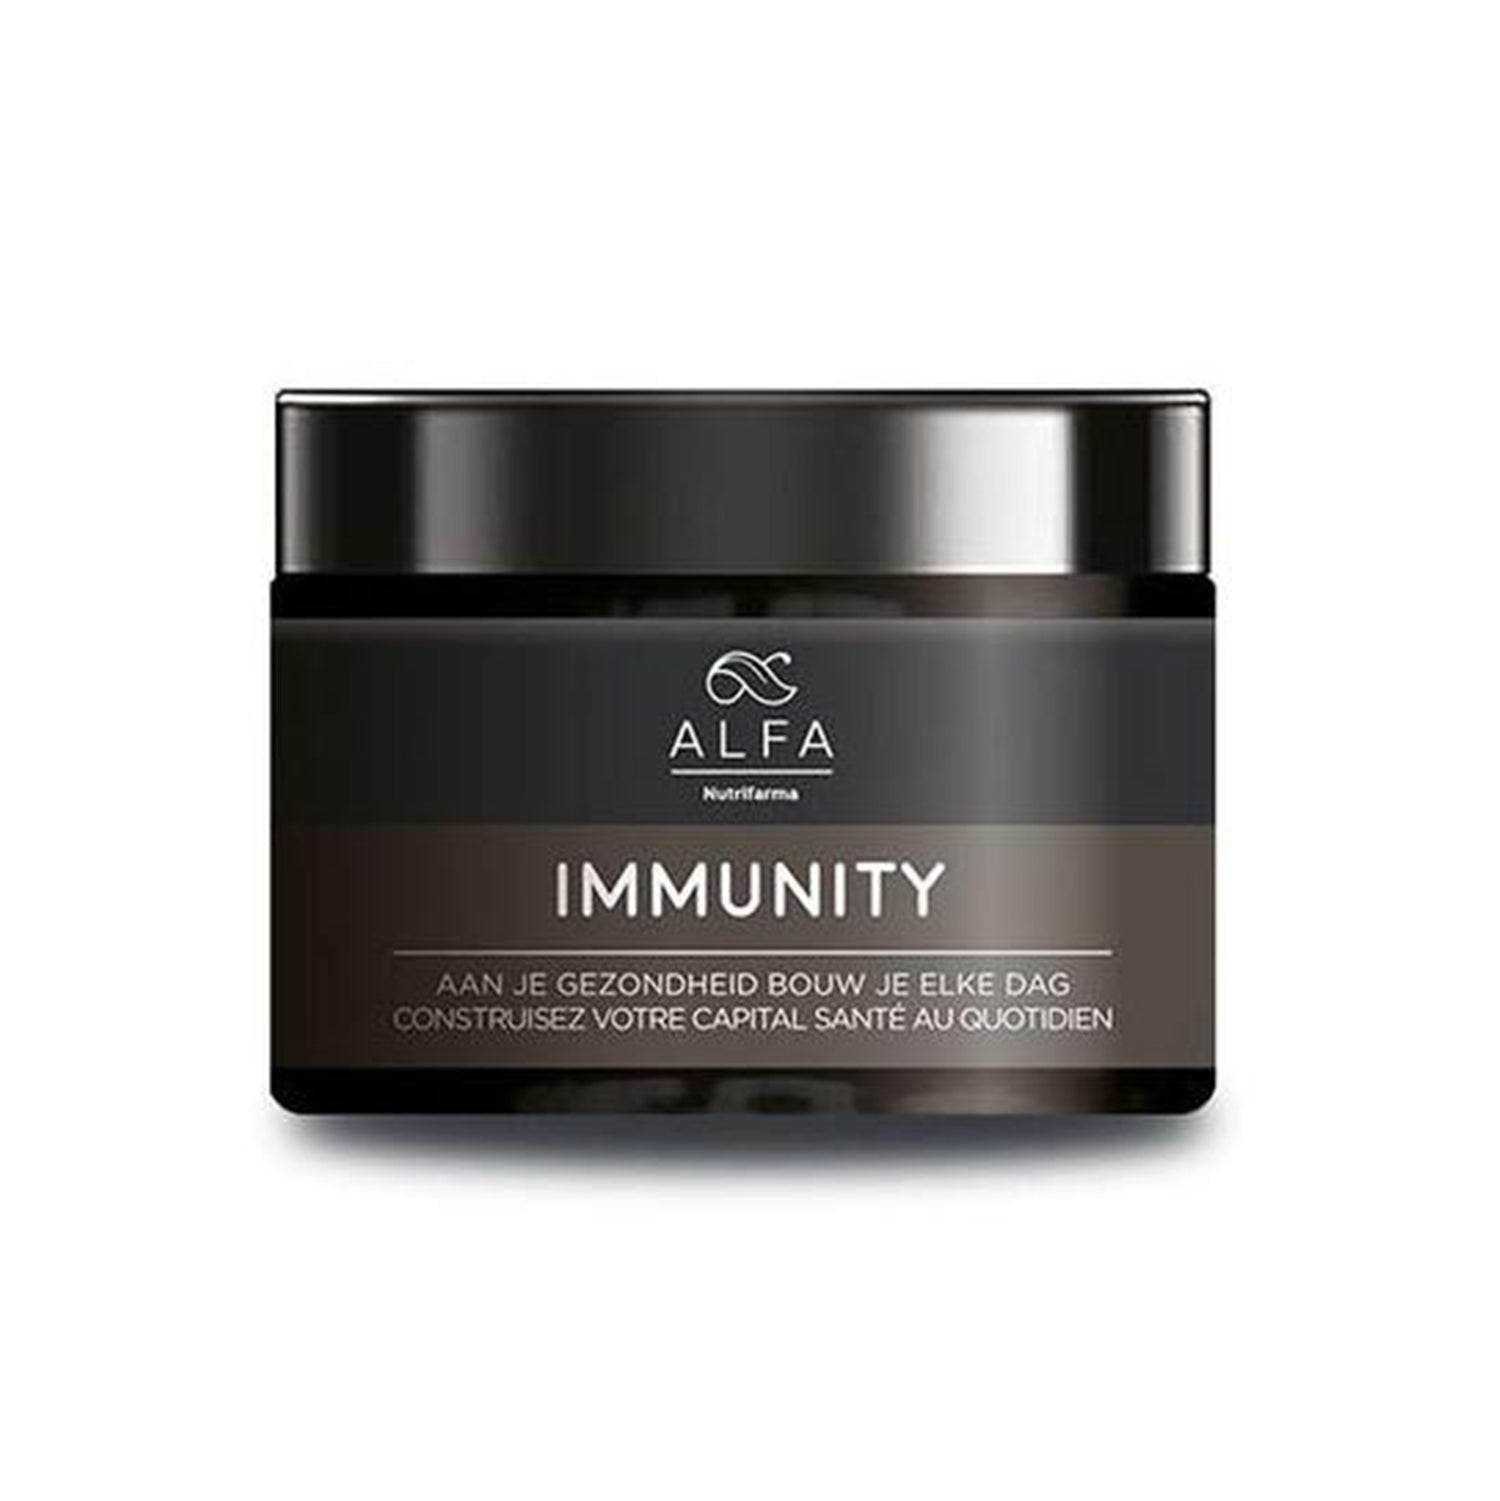 Alfa Immunity - Pour une résistance renforcée